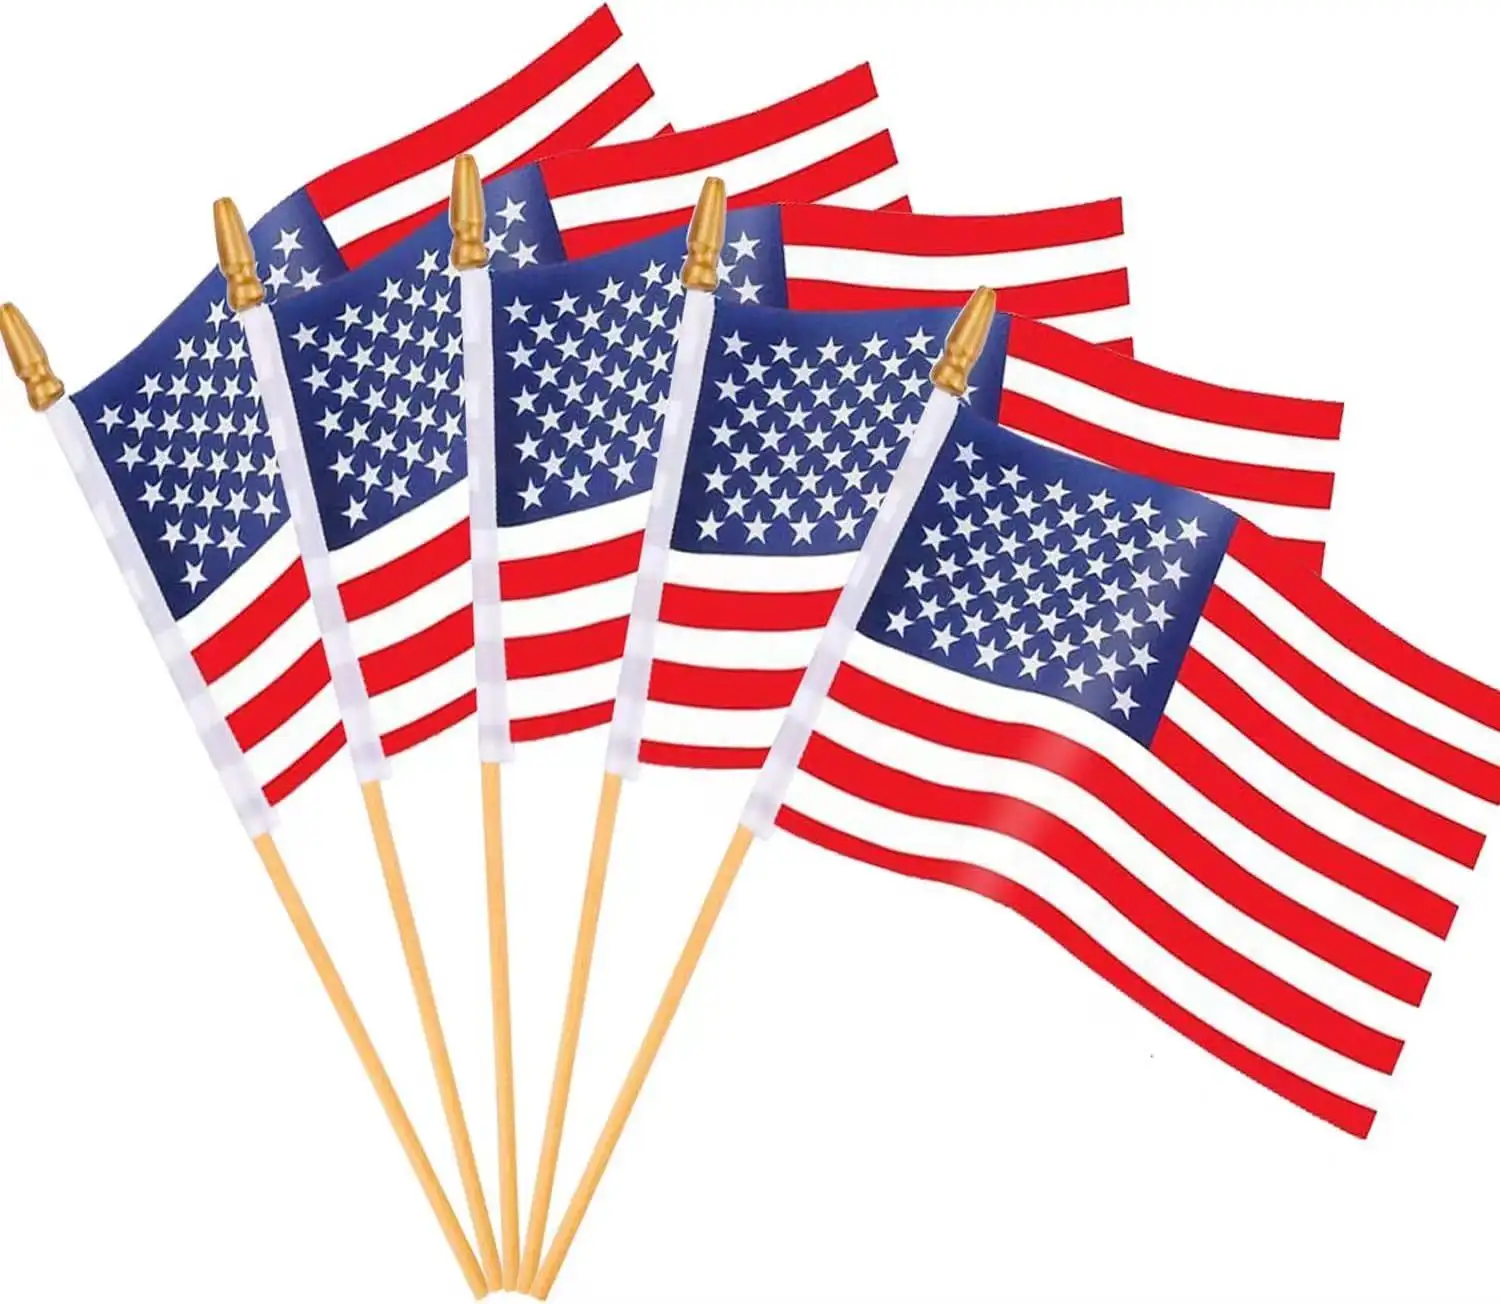 4x6 인치 스틱에 작은 미국 국기가 미국 독립 기념일에 적합한 미니 미국 국기를 보유하고 있습니다.